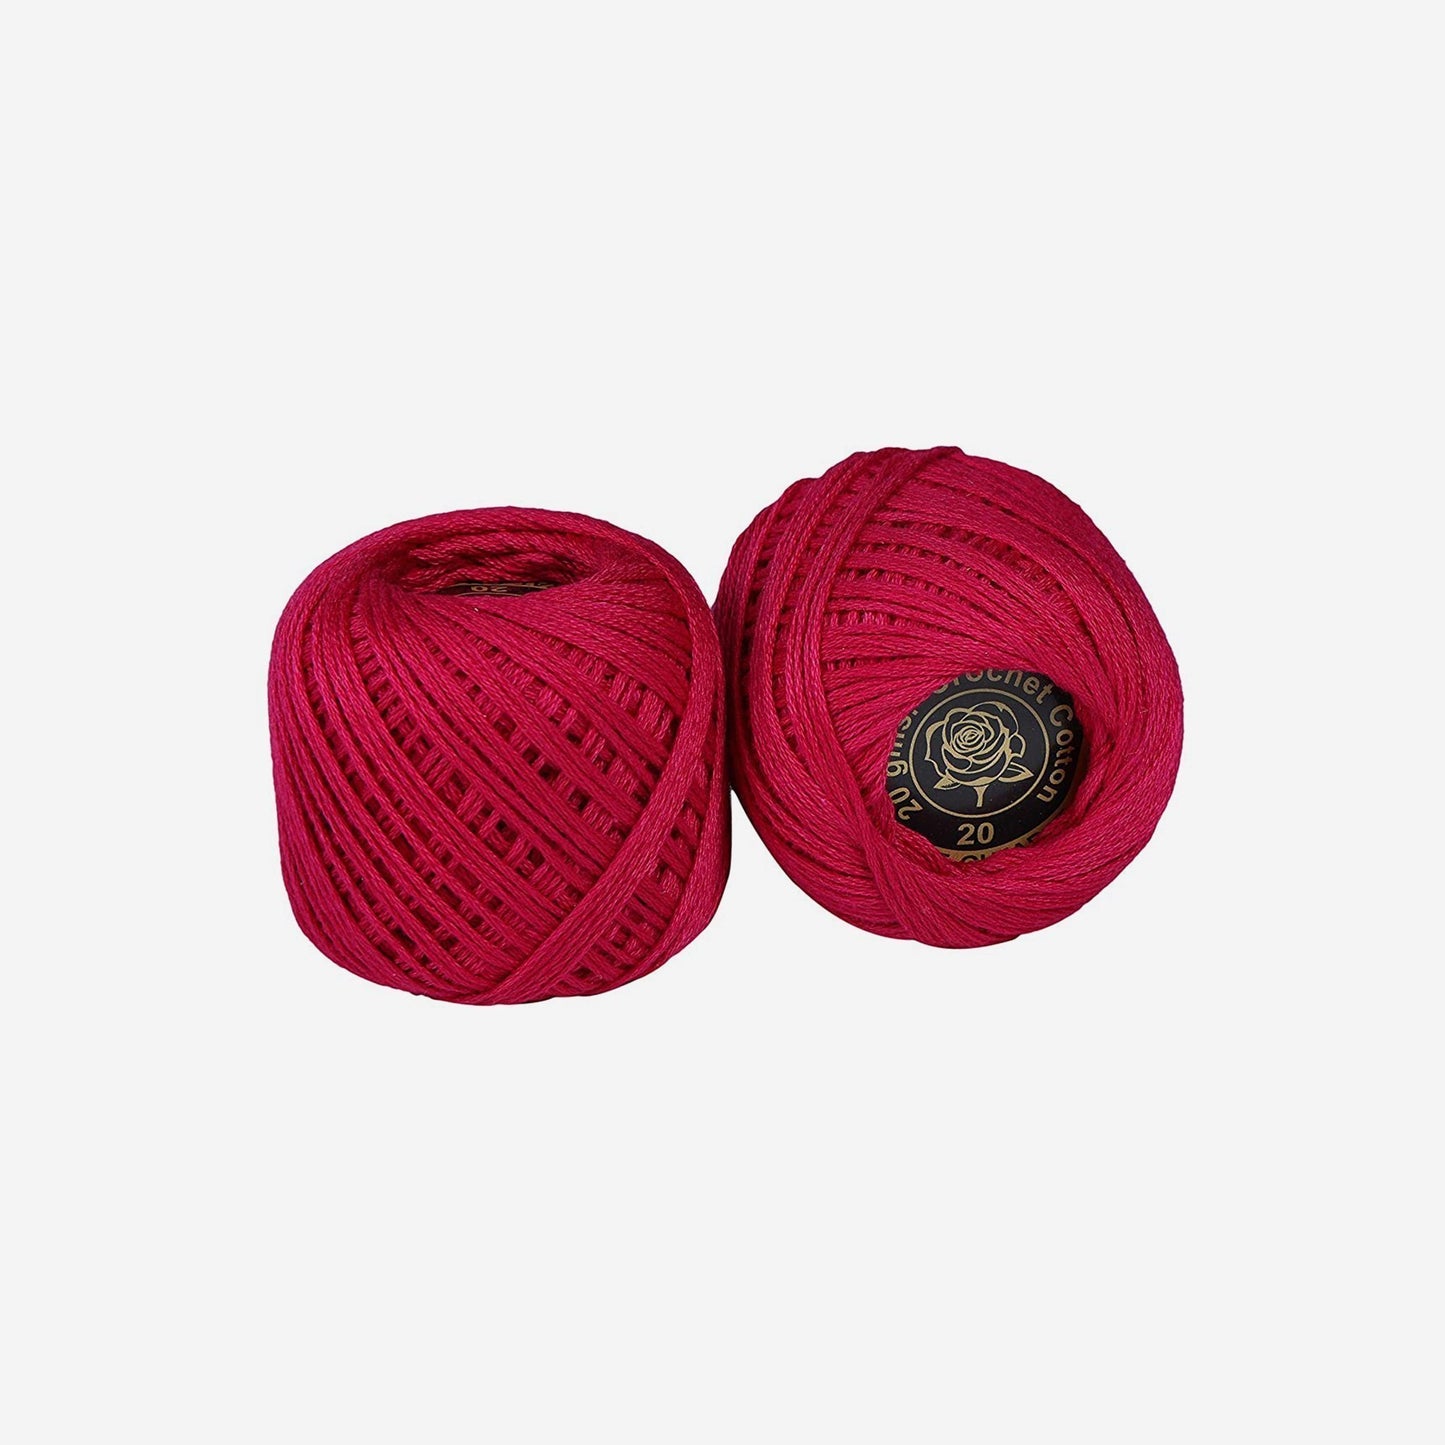 Hand-crochet hoops (Variation 15)